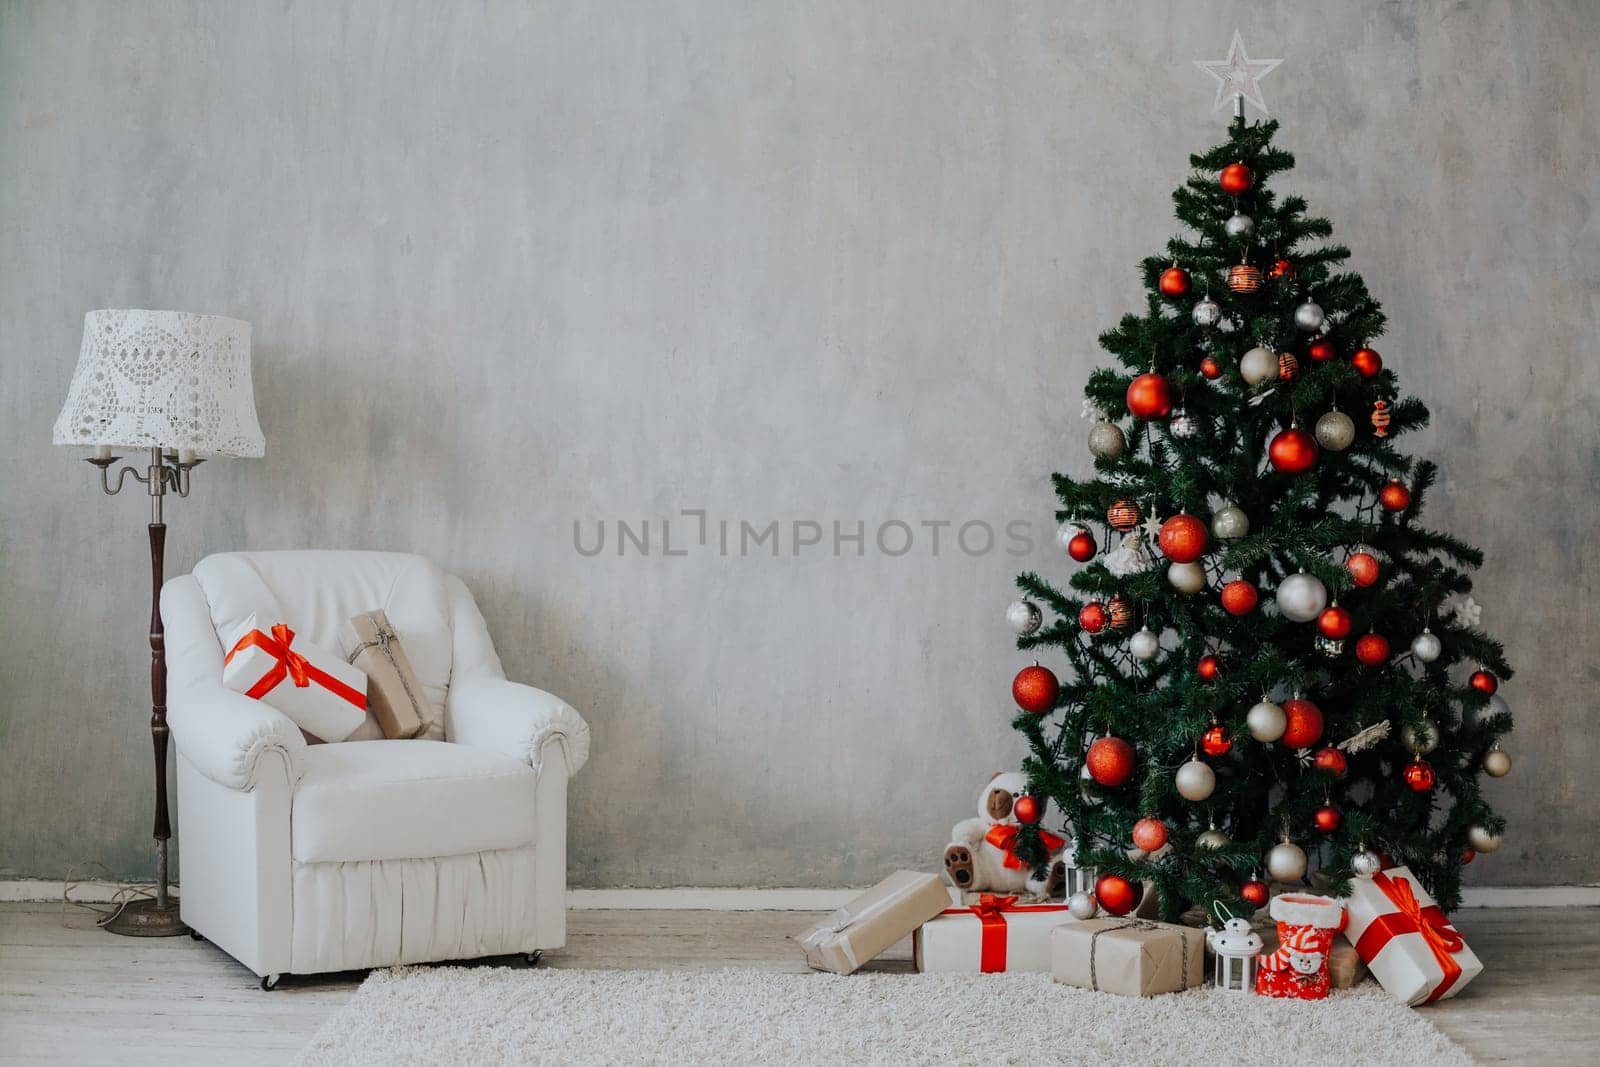 Christmas decor for Christmas with gifts 1